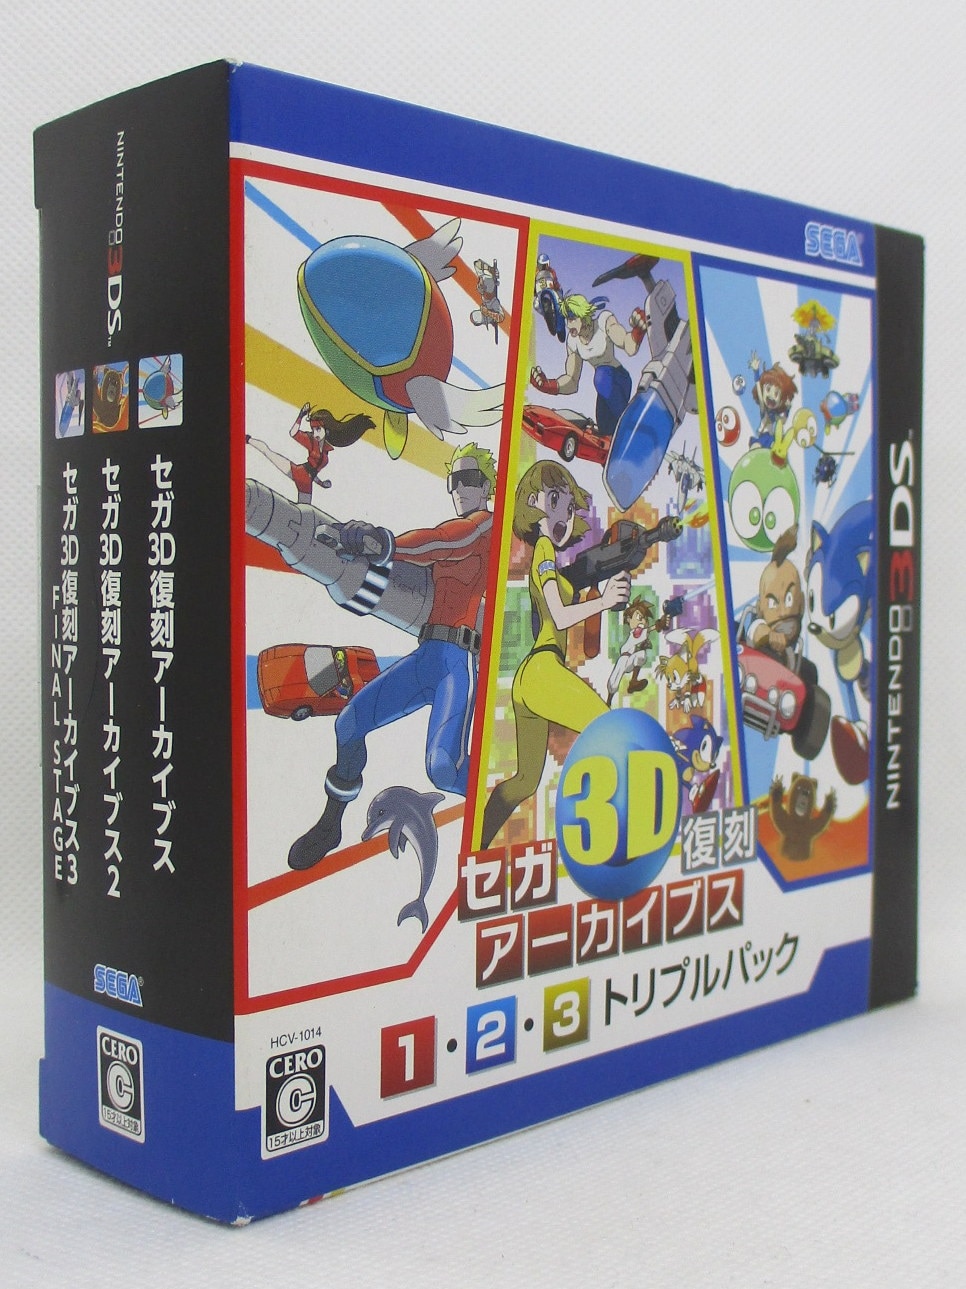 セガ3D復刻アーカイブス1・2・3 トリプルパックHCV1014 - 携帯用ゲームソフト